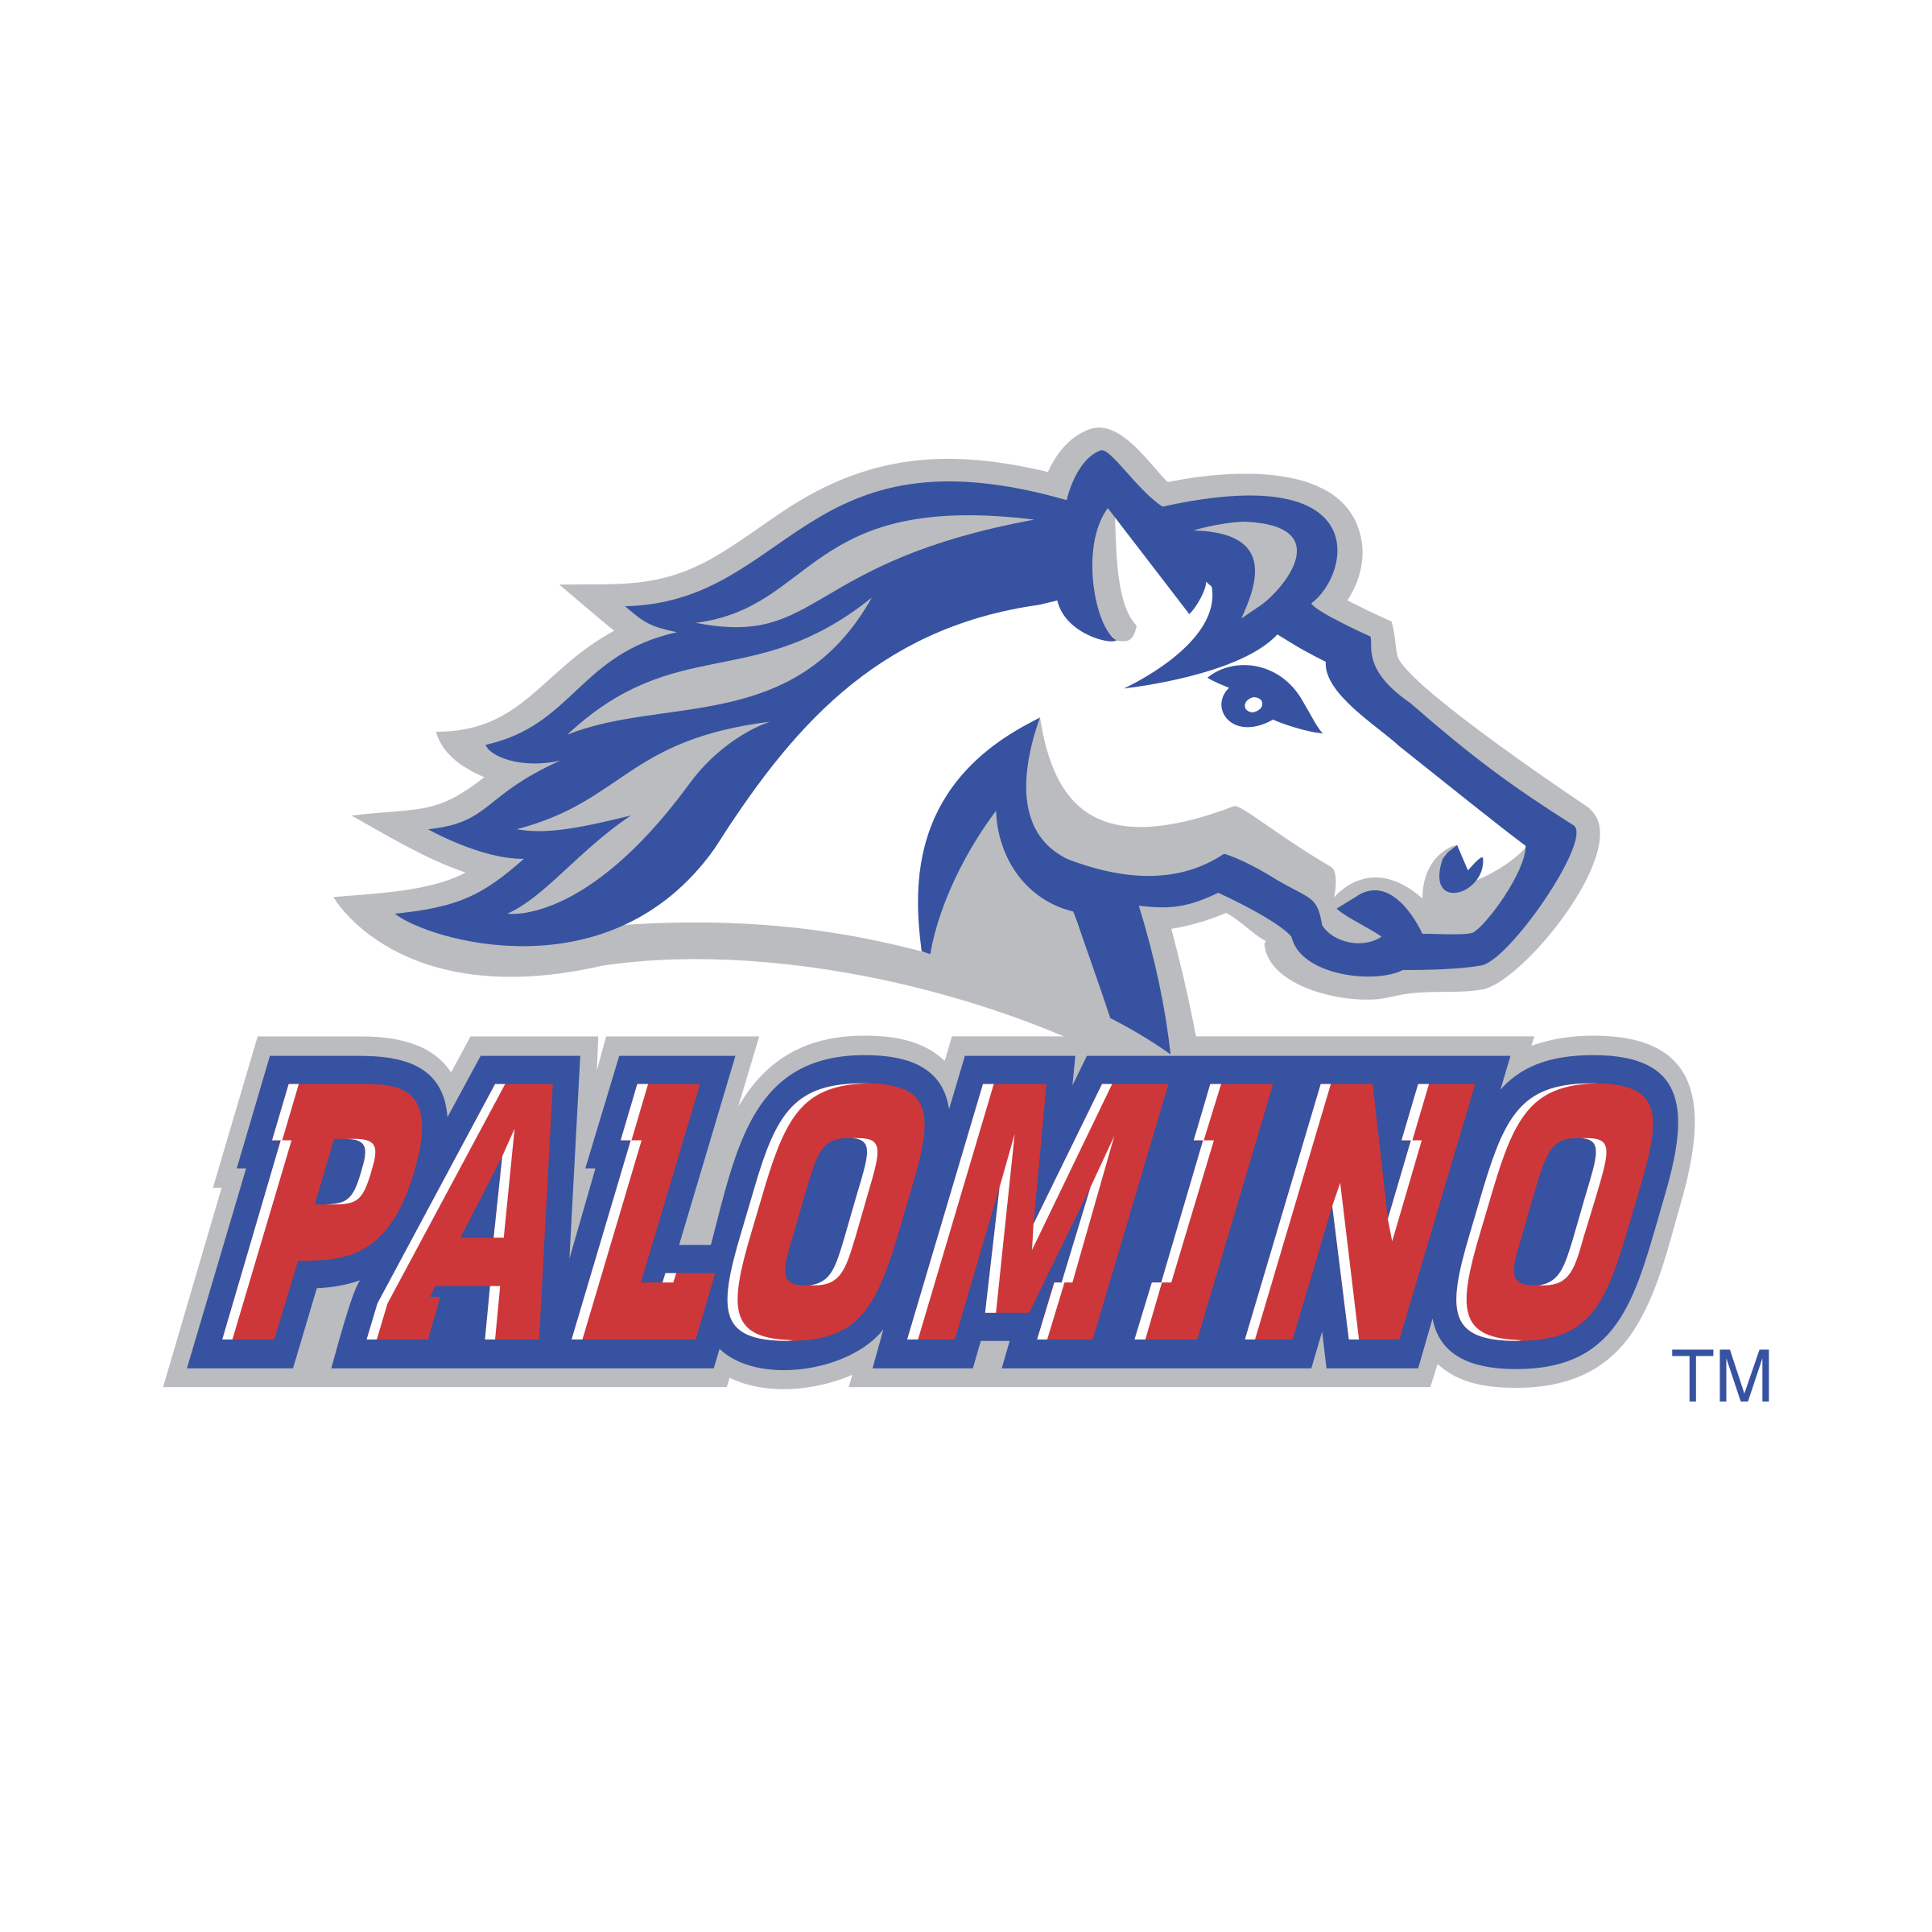 Palomino Logo - Palomino Logo PNG Transparent & SVG Vector